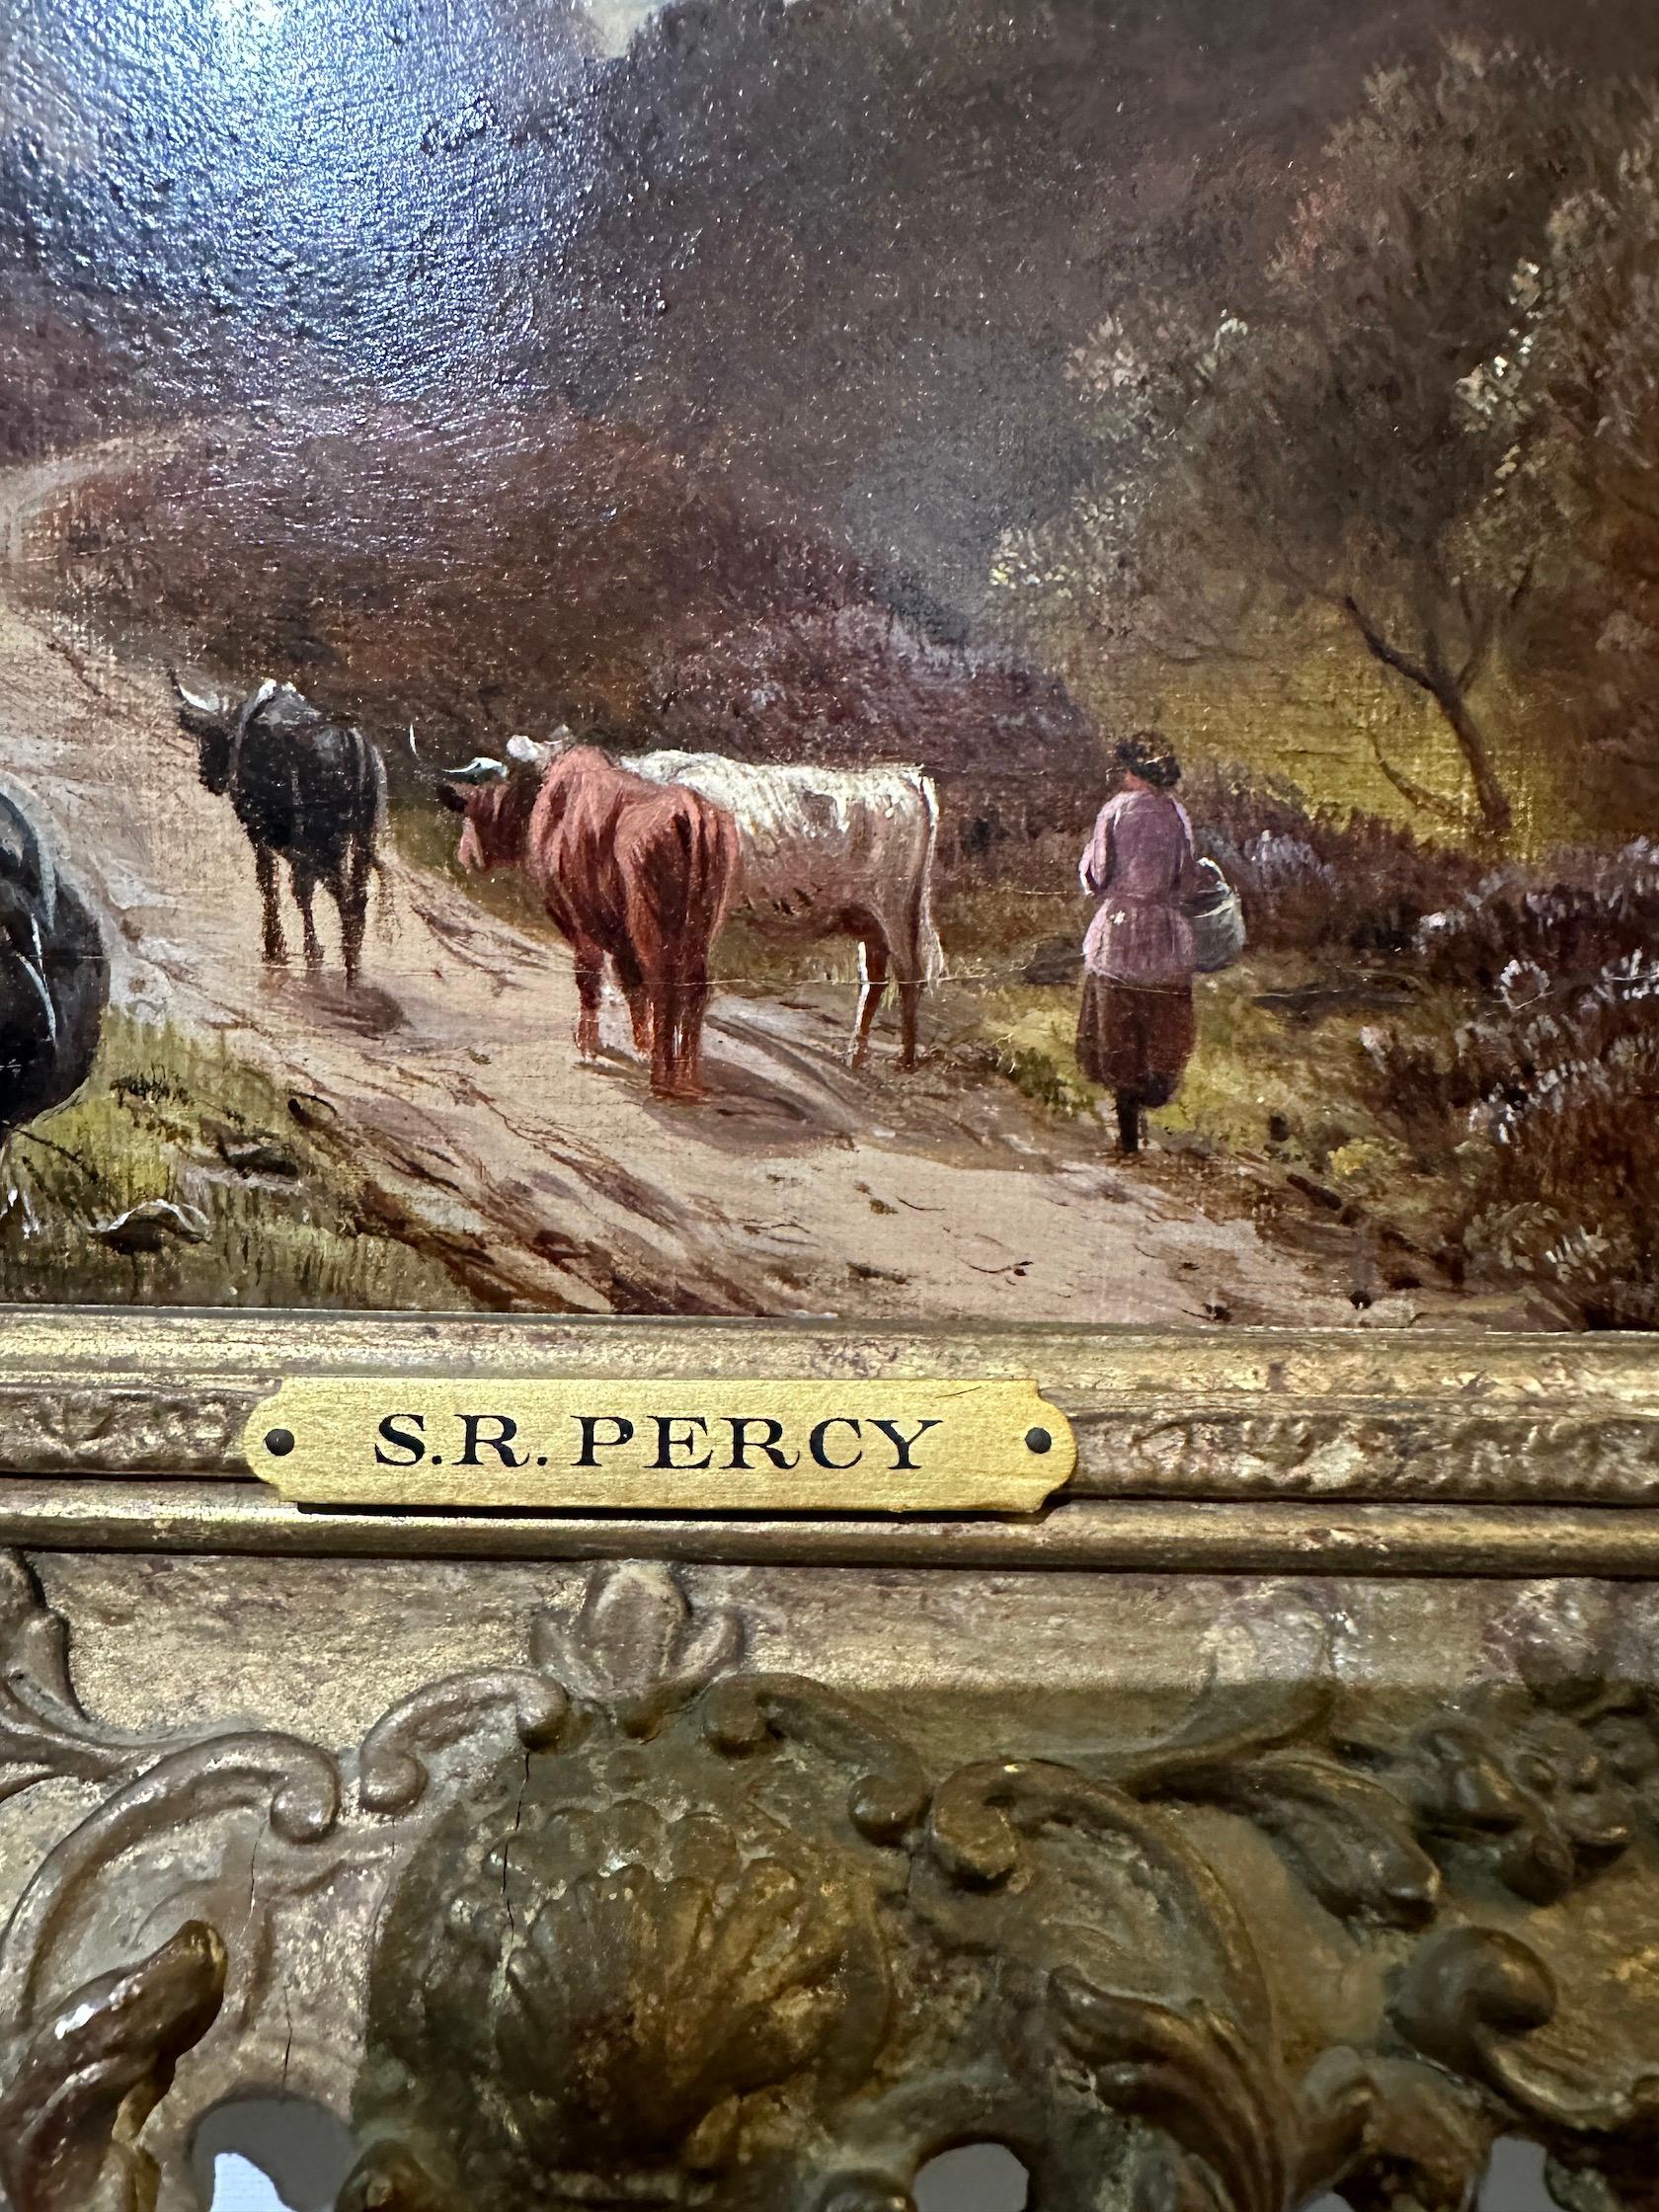 Merveilleux paysage écossais des Highlands du XIXe siècle, avec un personnage et du bétail sur un sentier surplombant un Loch

Cette œuvre est signée en bas à droite et est encadrée dans un cadre en feuille d'or vintage.

Percy était un peintre